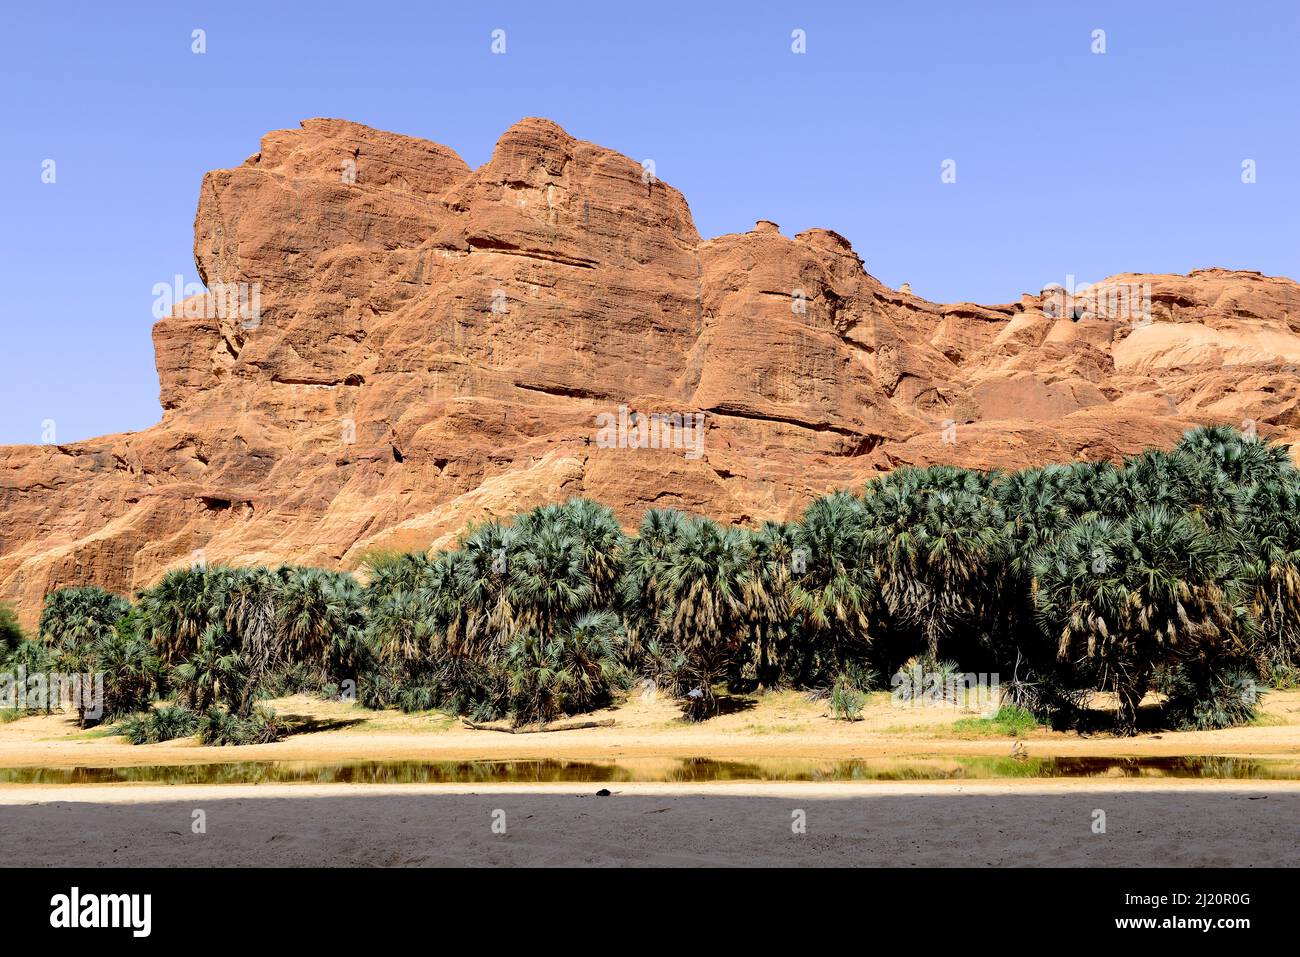 Formations rocheuses de grès érodées et arbres dans la réserve naturelle et culturelle Ennedi, site du patrimoine mondial de l'UNESCO, Sahara, Tchad. Septembre 2019. Banque D'Images